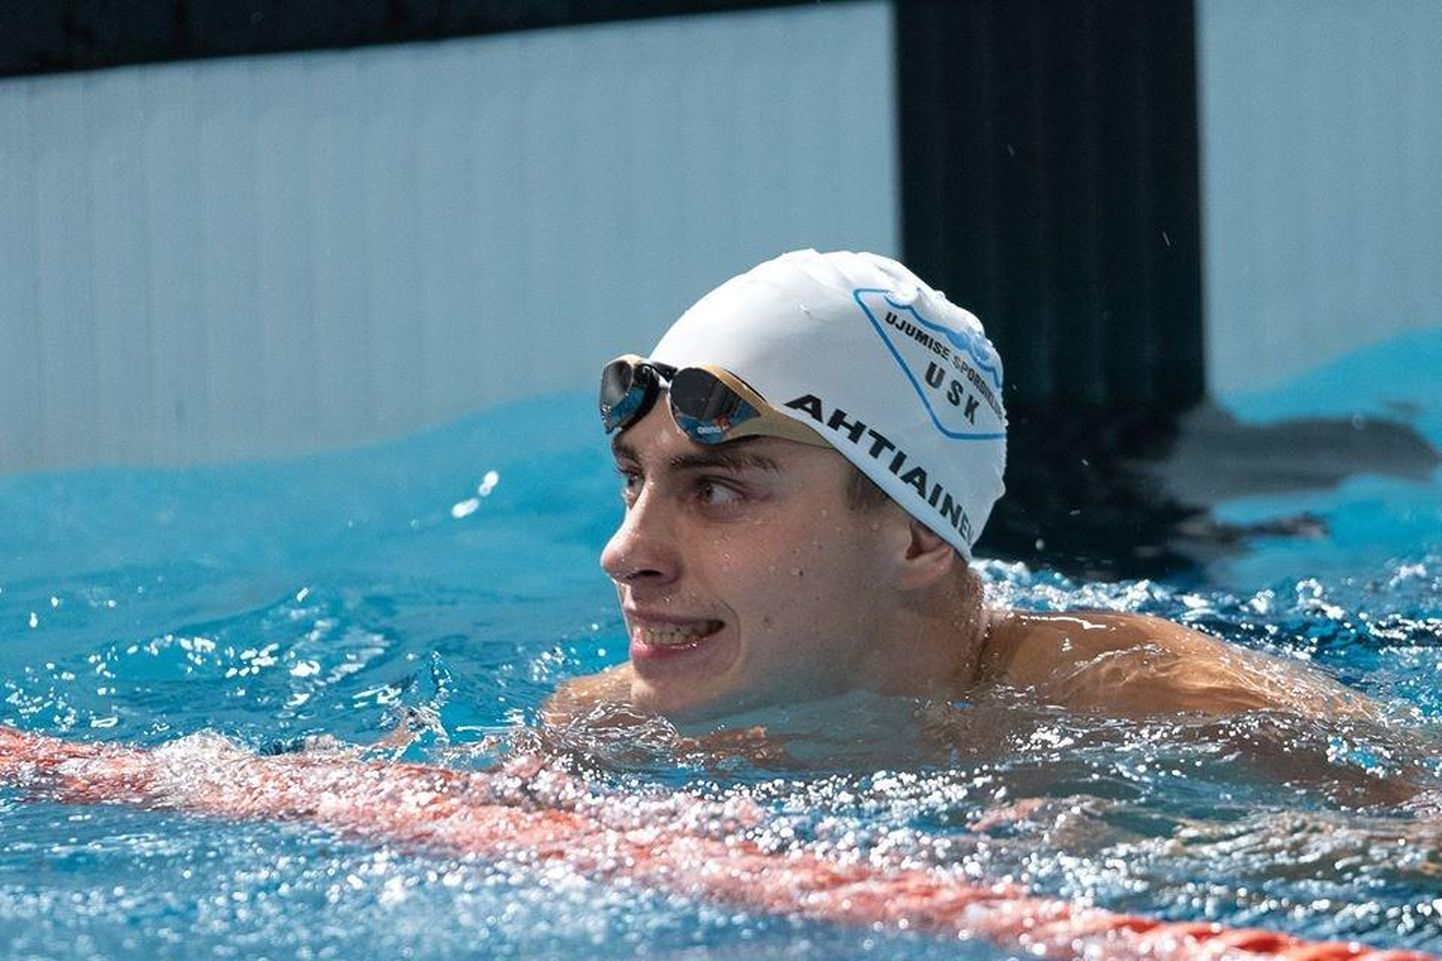 Alex Ahtiainen lõpetas karjääri senise parima võistlusaasta medalivõitudega Eesti lühiraja ujumise meistrivõistlustel. Ees ootab veelgi põnevam ja meelepärasem pika raja hooaeg.